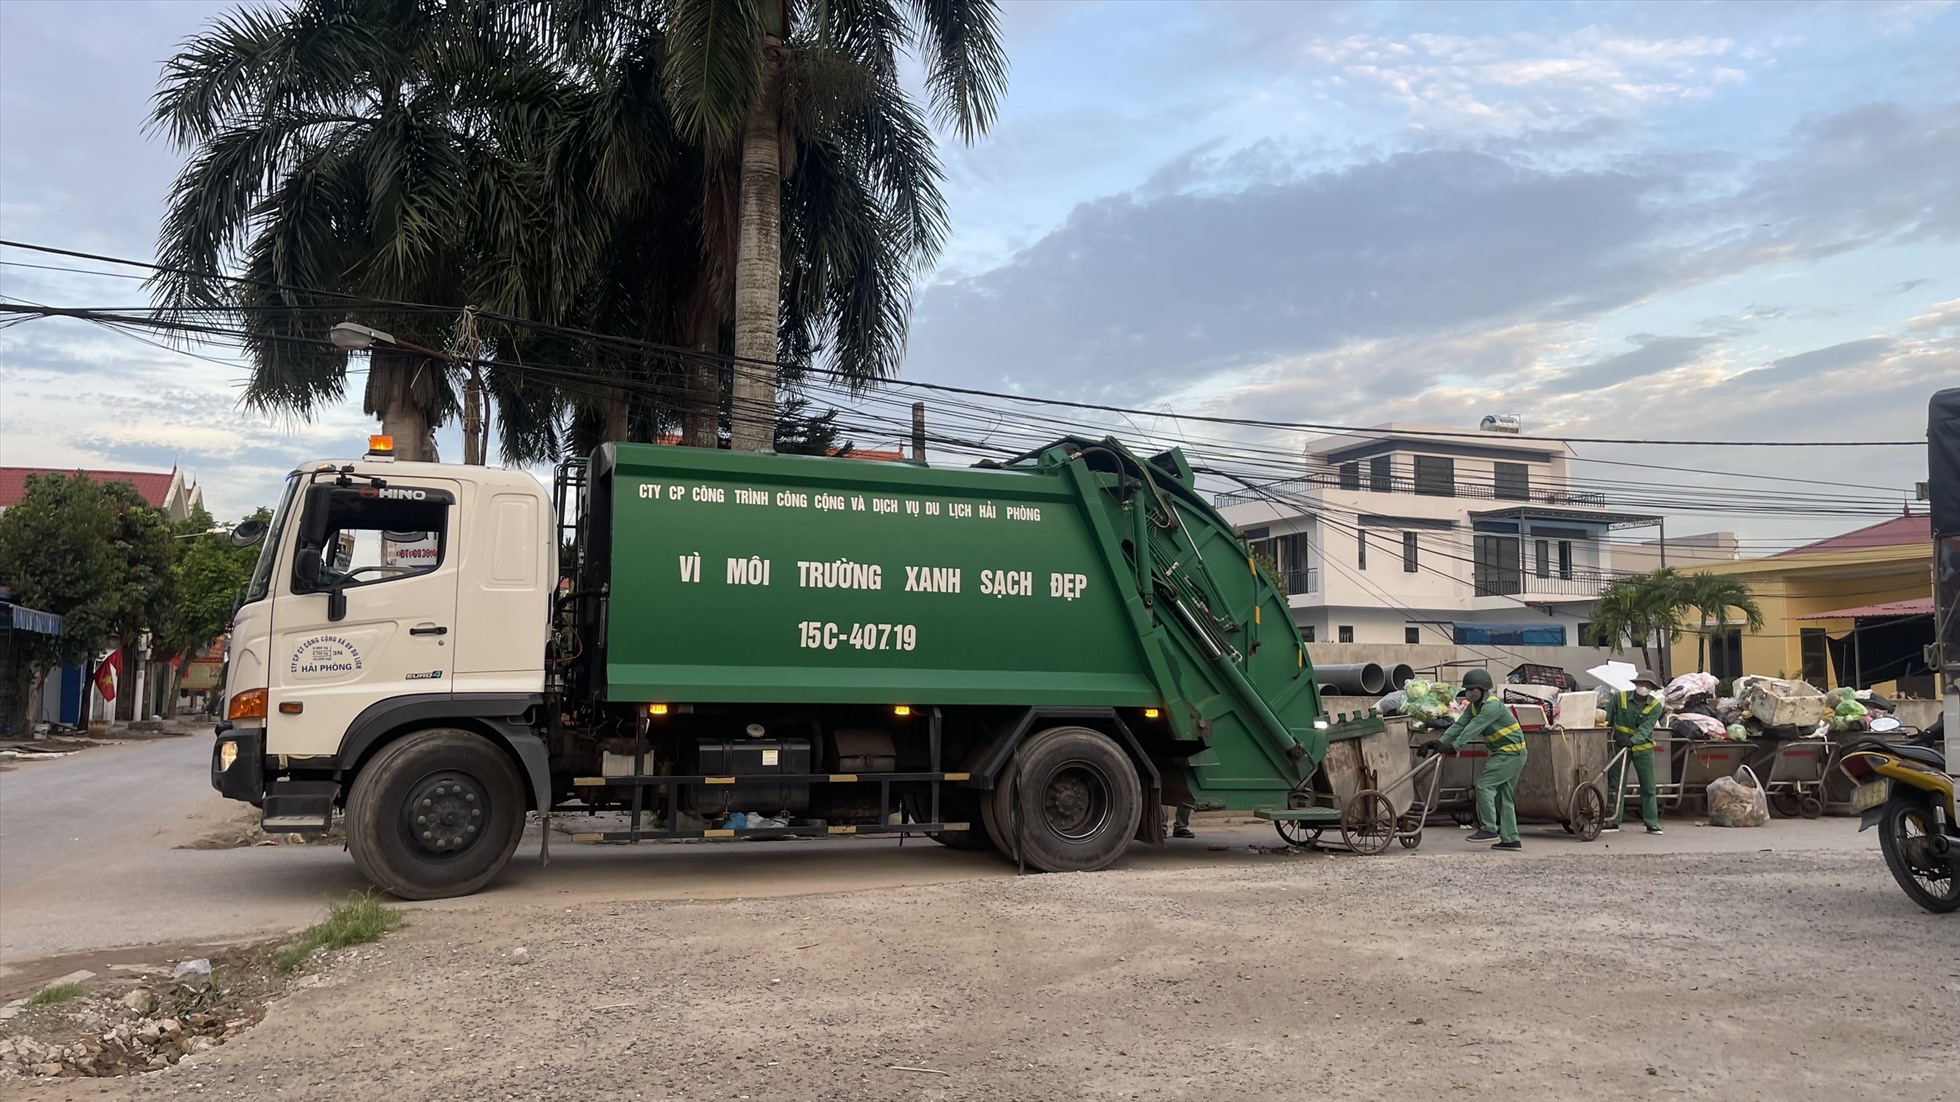 Toàn bộ quá trình tập kết, vận chuyển rác kéo dài từ 5h đến 8h mỗi ngày tại Tổ dân phố Quý Kim. Ảnh: Người dân cung cấp